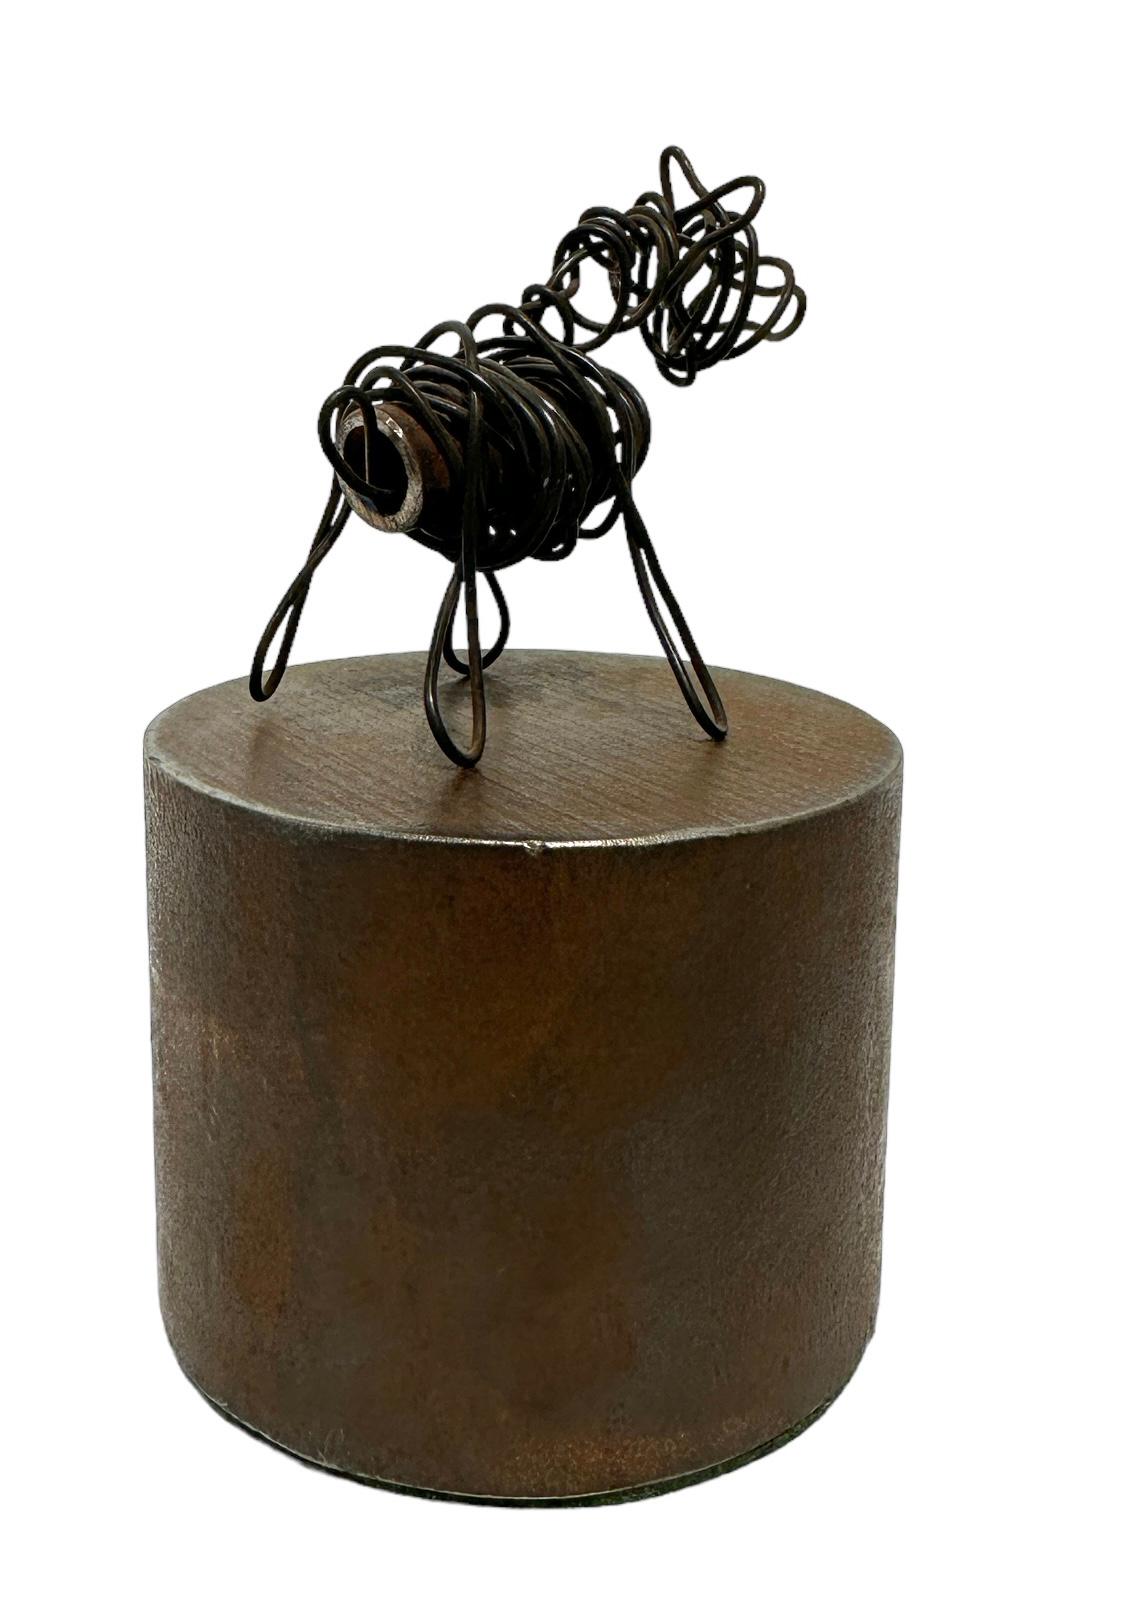 wire sculpture dog